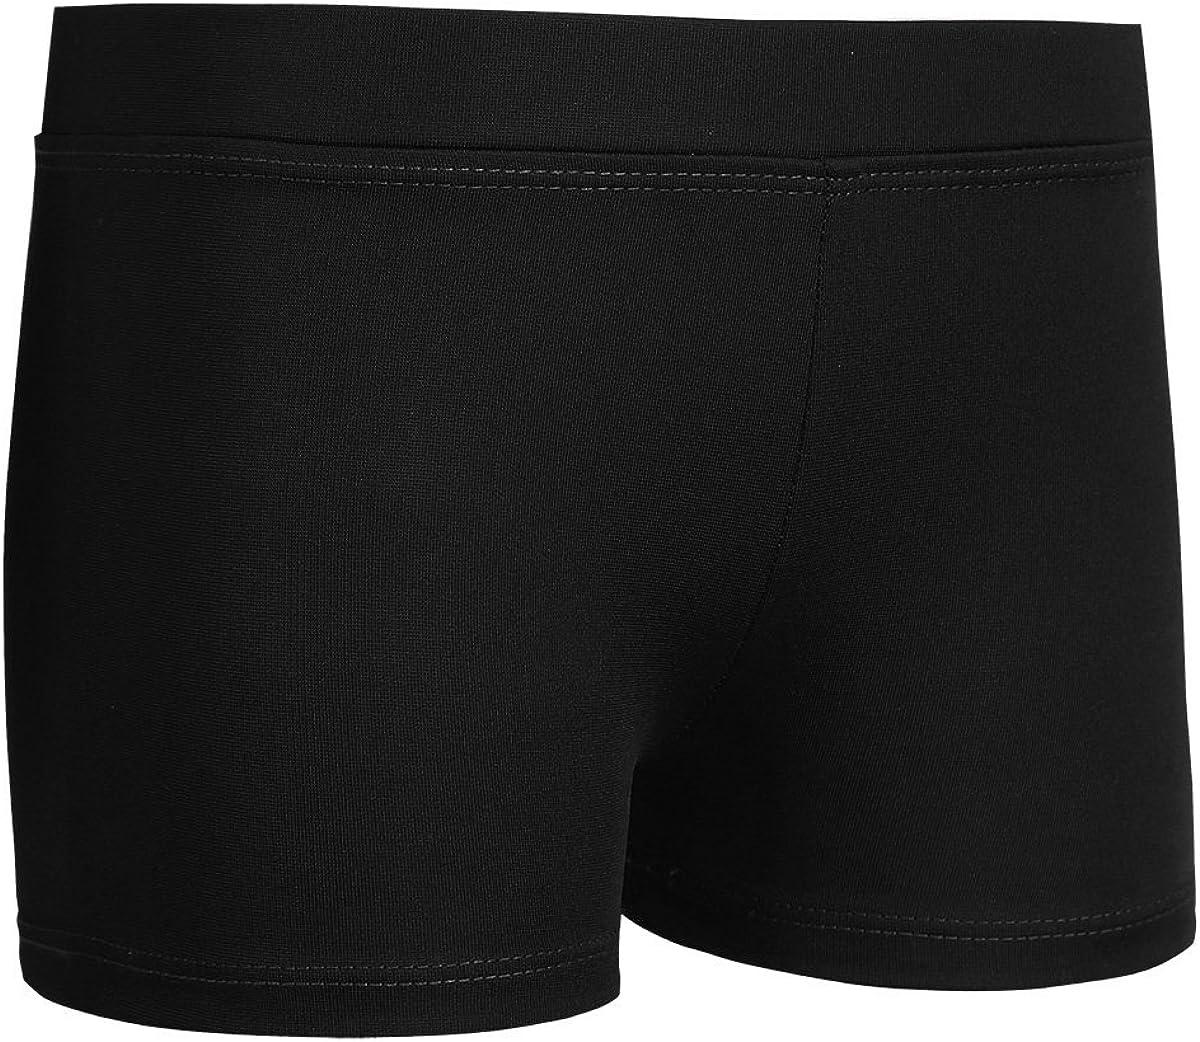 FEESHOW Girls Stretch Gymnastics Ballet Dance Booty Shorts Underwear Gym  Yoga Sports Cycling Running Shorts Black 12